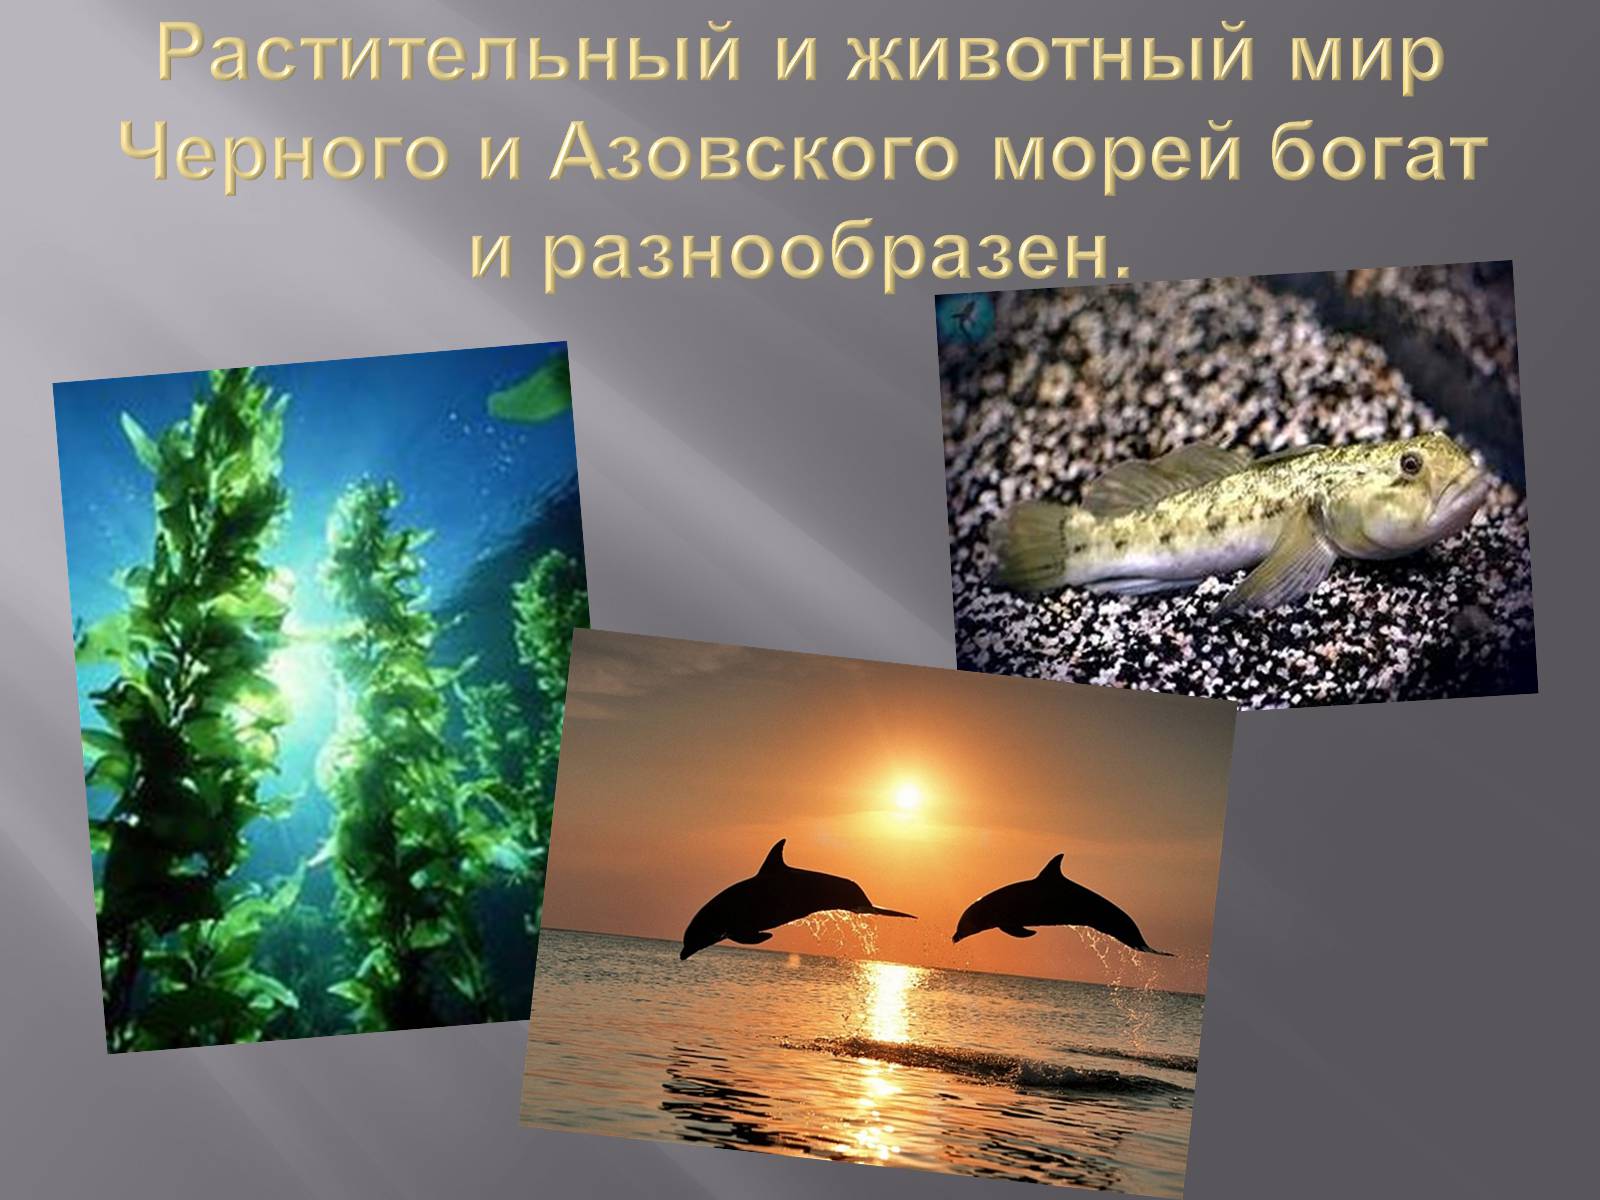 Растительный моря и животный мир Азовского моря